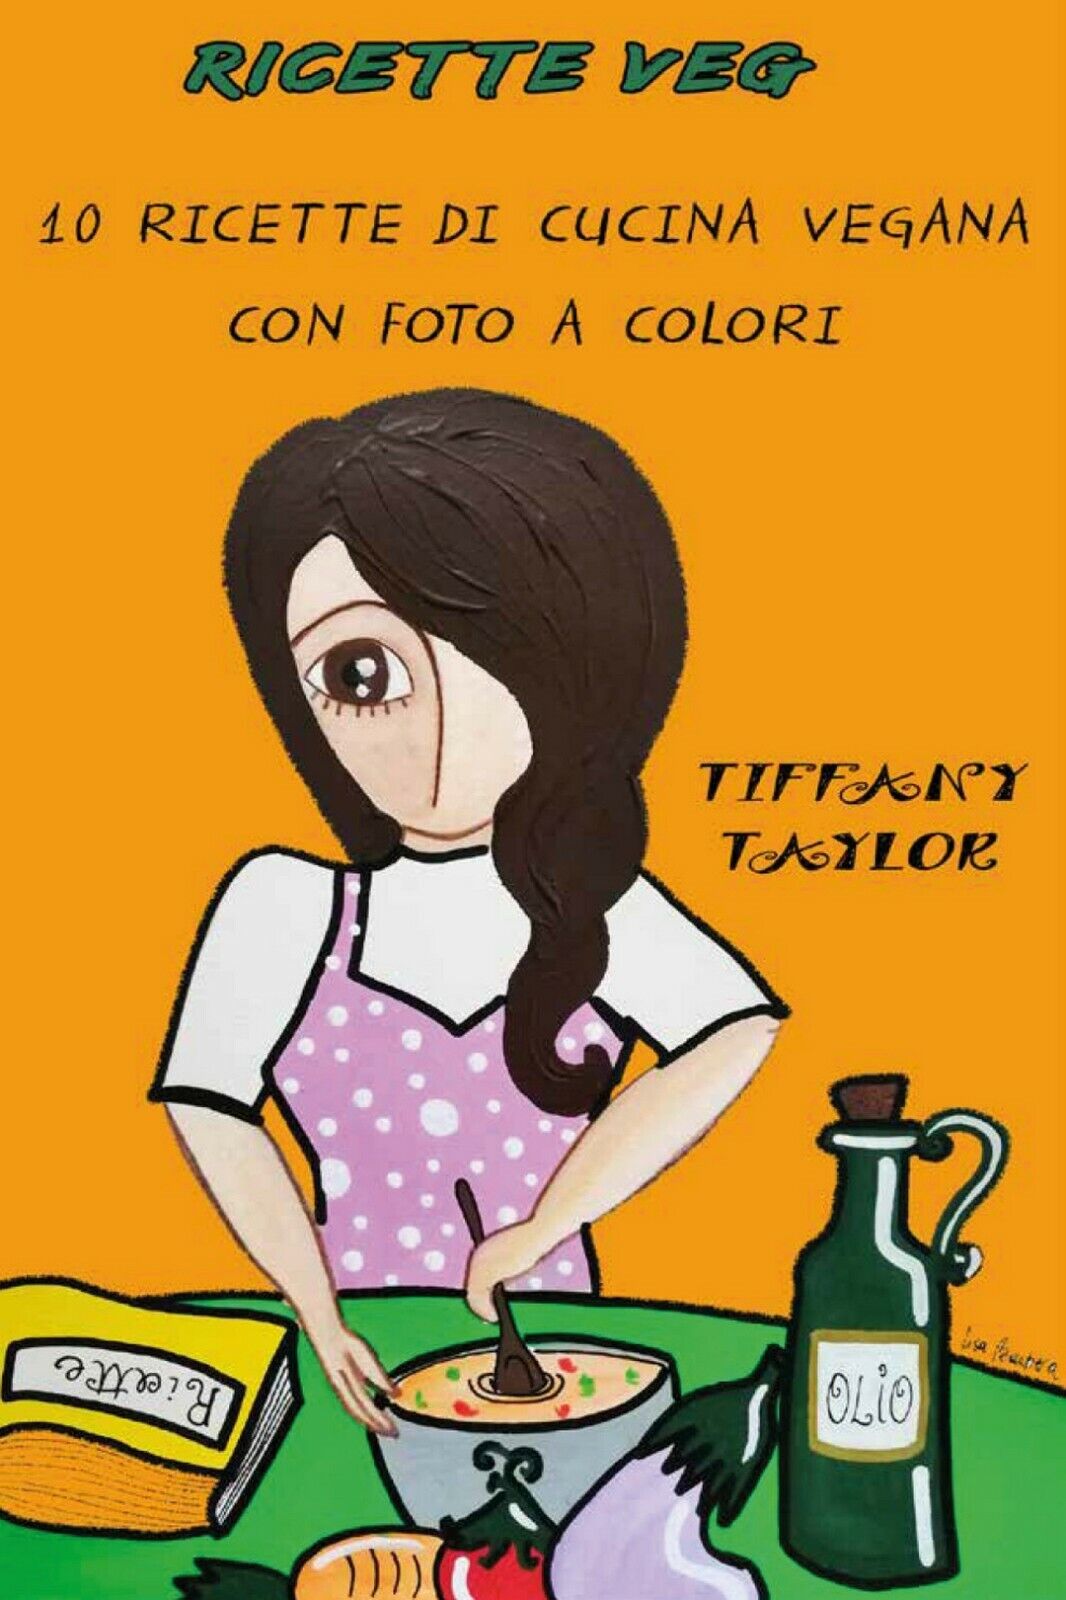 Ricette veg. 10 ricette di cucina vegana con foto a colori, Tiffany Taylor, 2021 libro usato